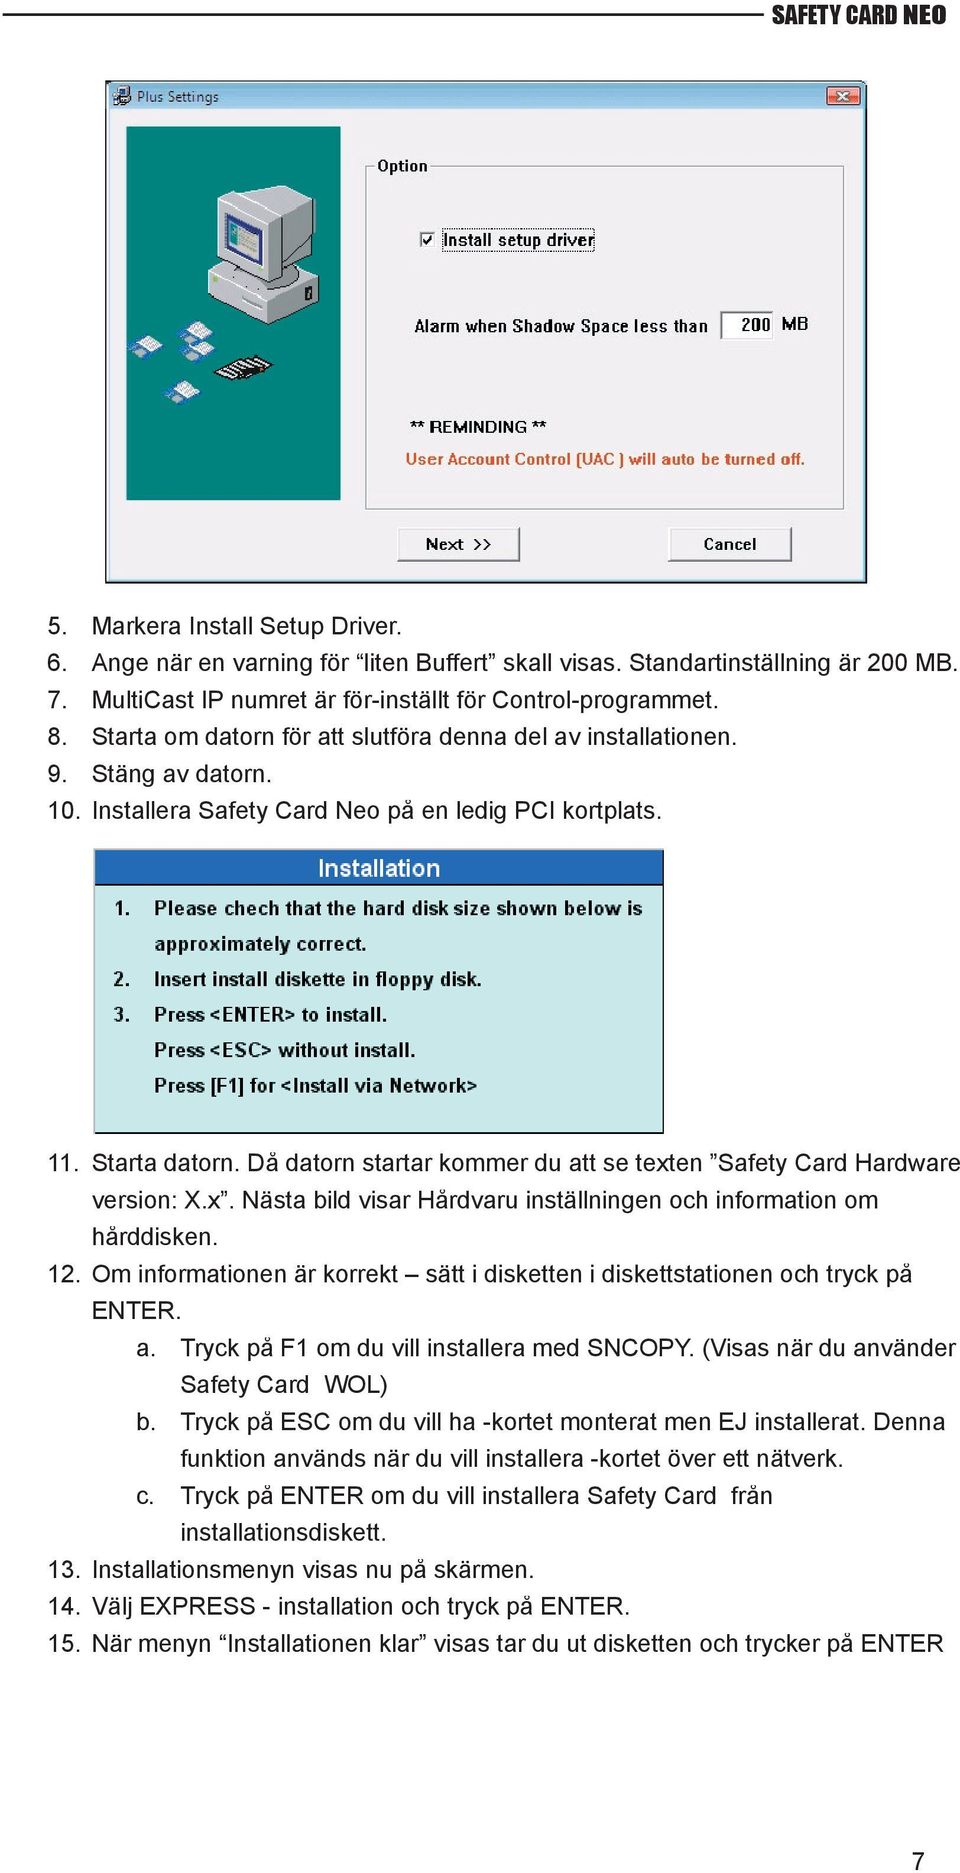 Då datorn startar kommer du att se texten Safety Card Hardware version: X.x. Nästa bild visar Hårdvaru inställningen och information om hårddisken. 12.